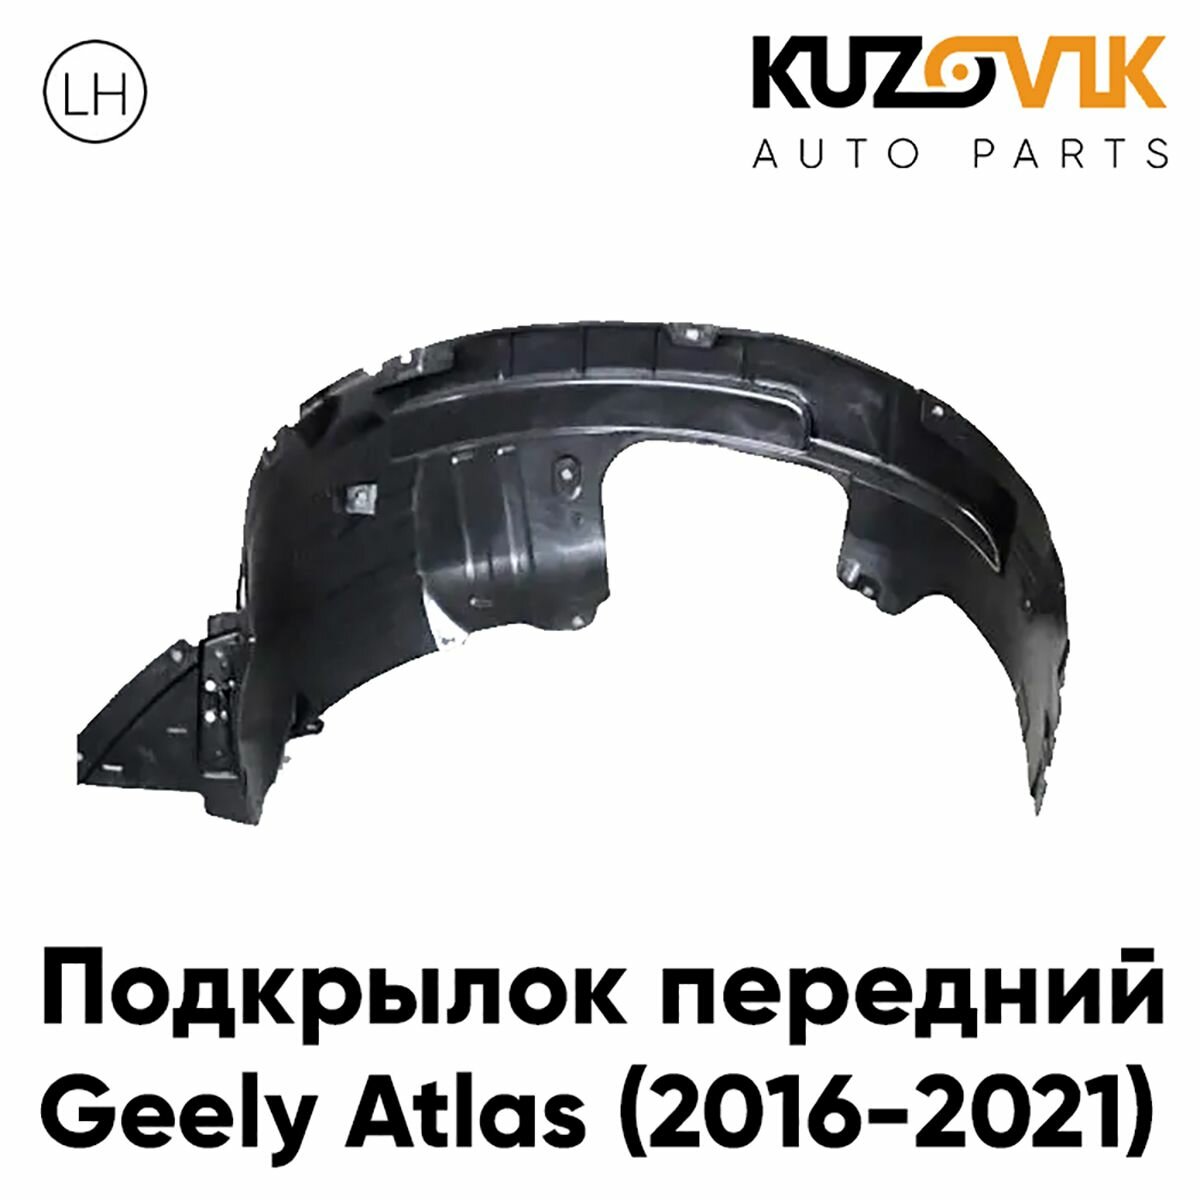 Подкрылок передний для Джили Атлас Geely Atlas (2016-2022) левый